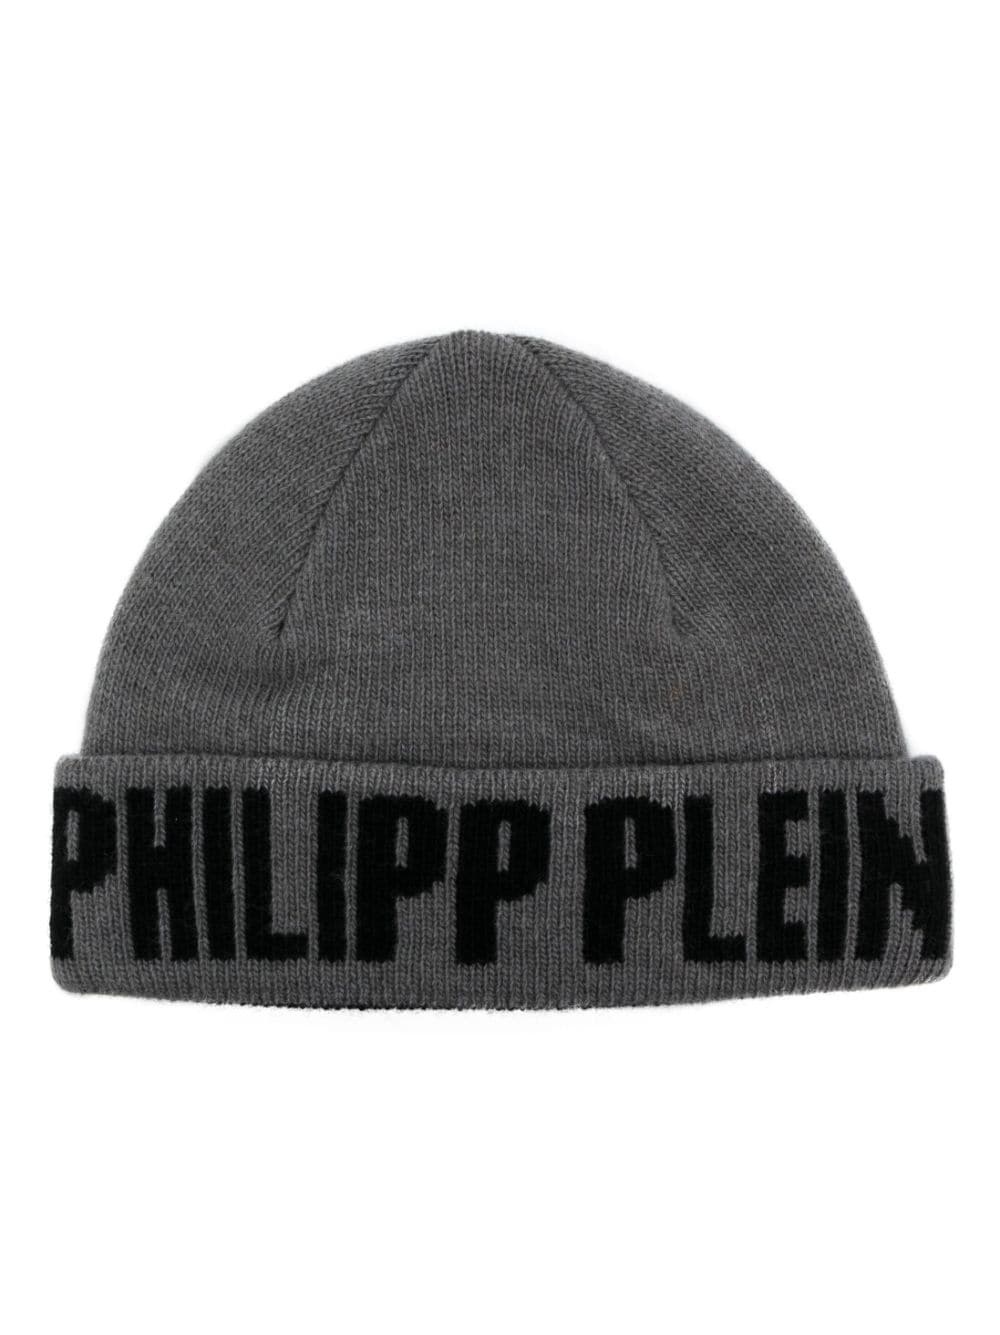 Philipp Plein jacquard beanie - 1